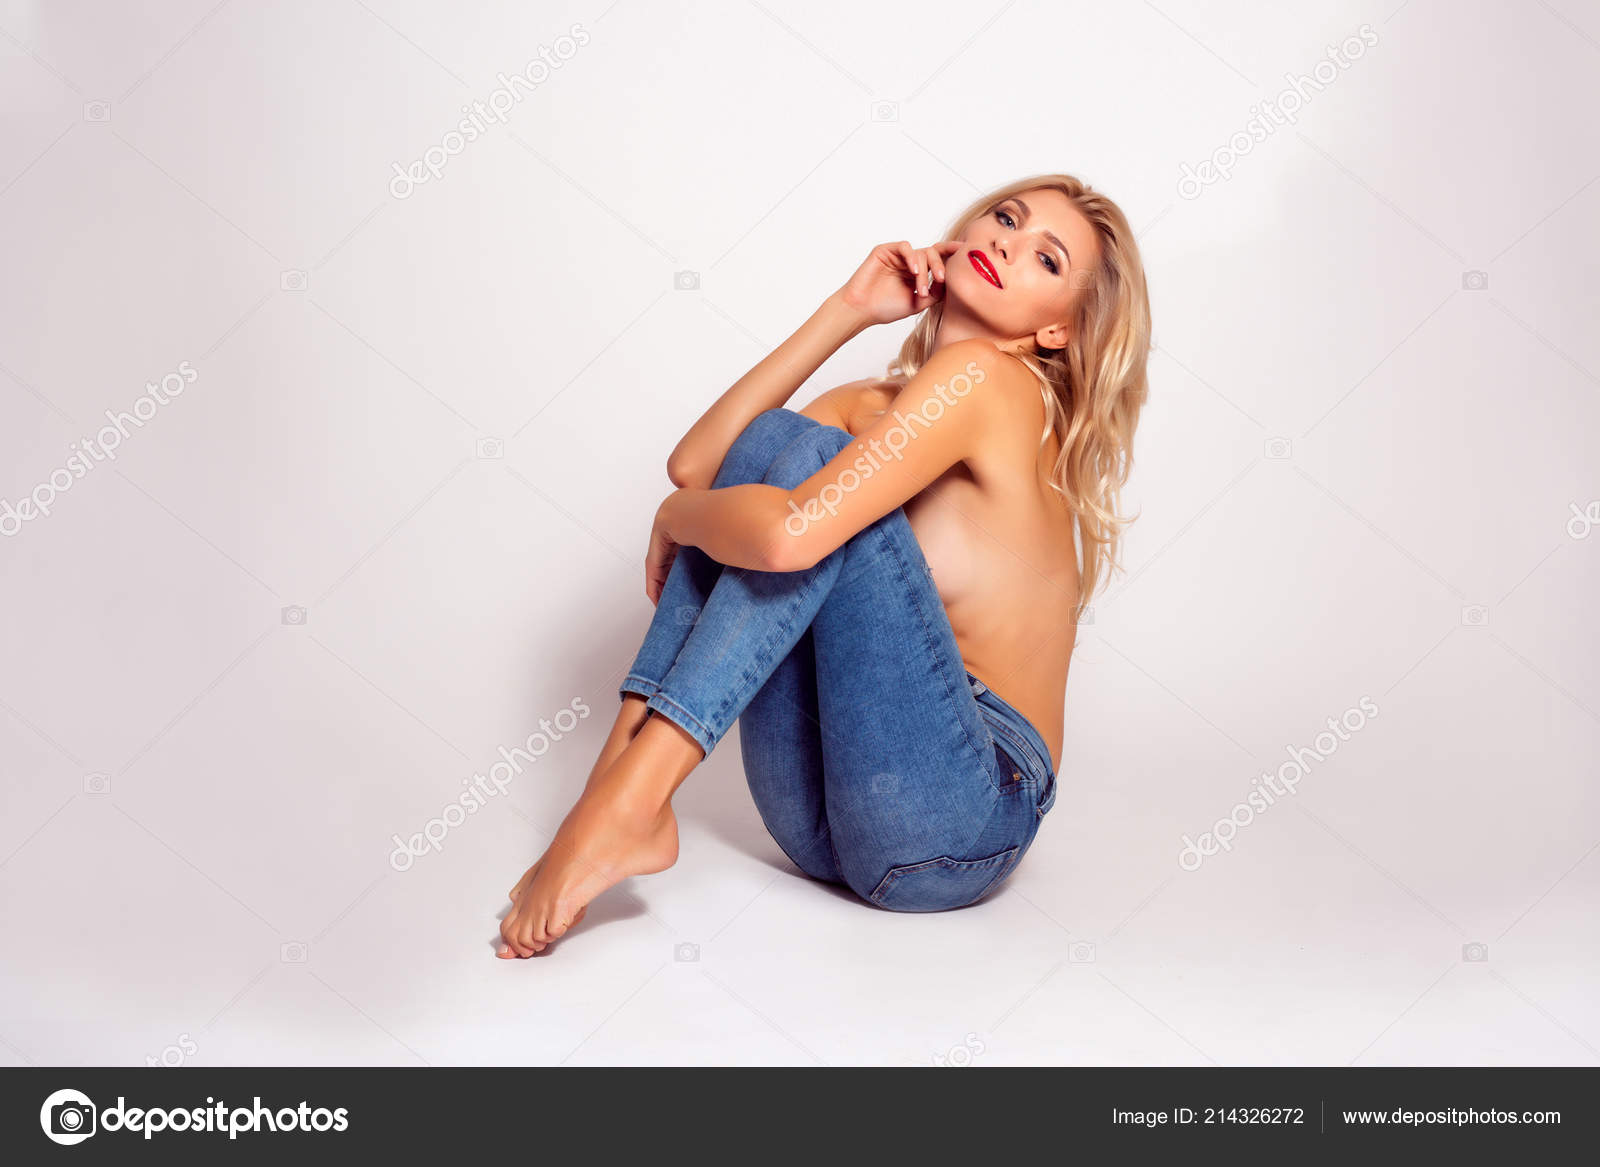 Татуированная блондинка в джинсах и с голой грудью стоит у стены